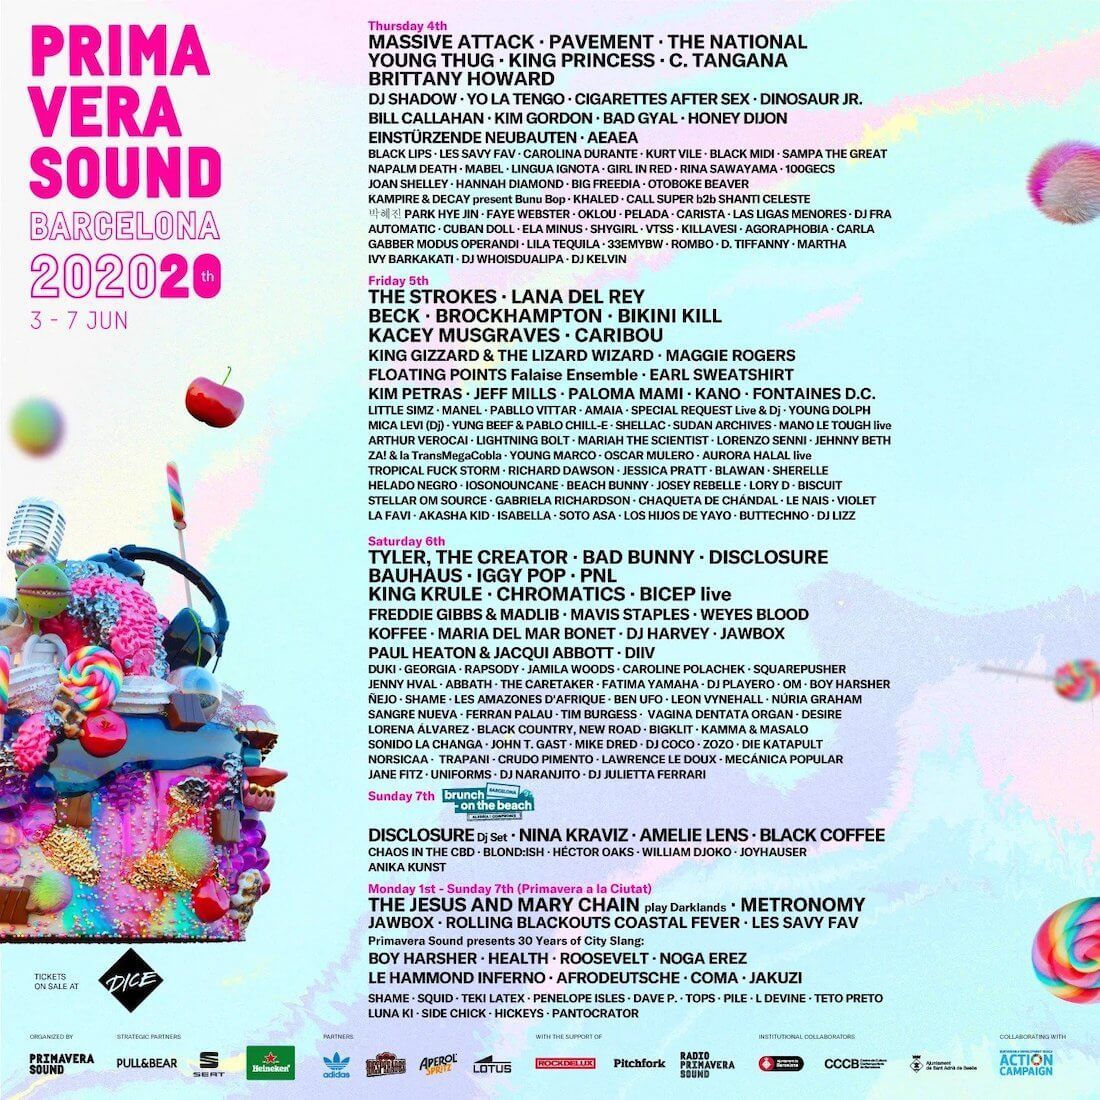 Primavera Sound 2020